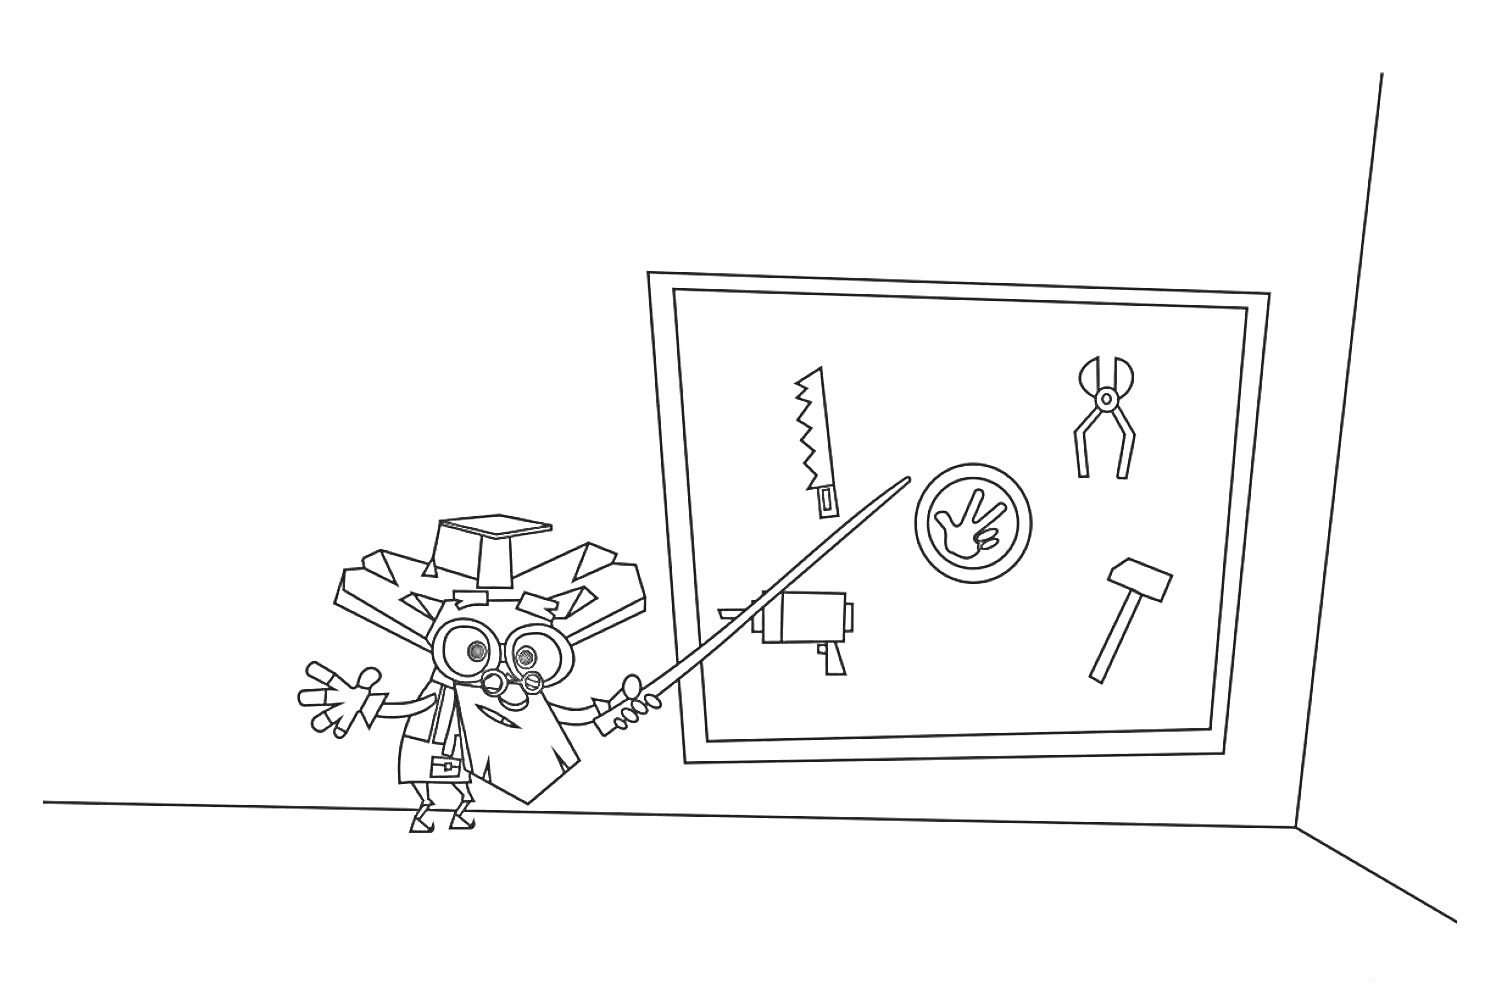 Раскраска Цветная картинка с изображением персонажа, указывающего на доску с инструментами — пила, плоскогубцы, шуруп, молоток